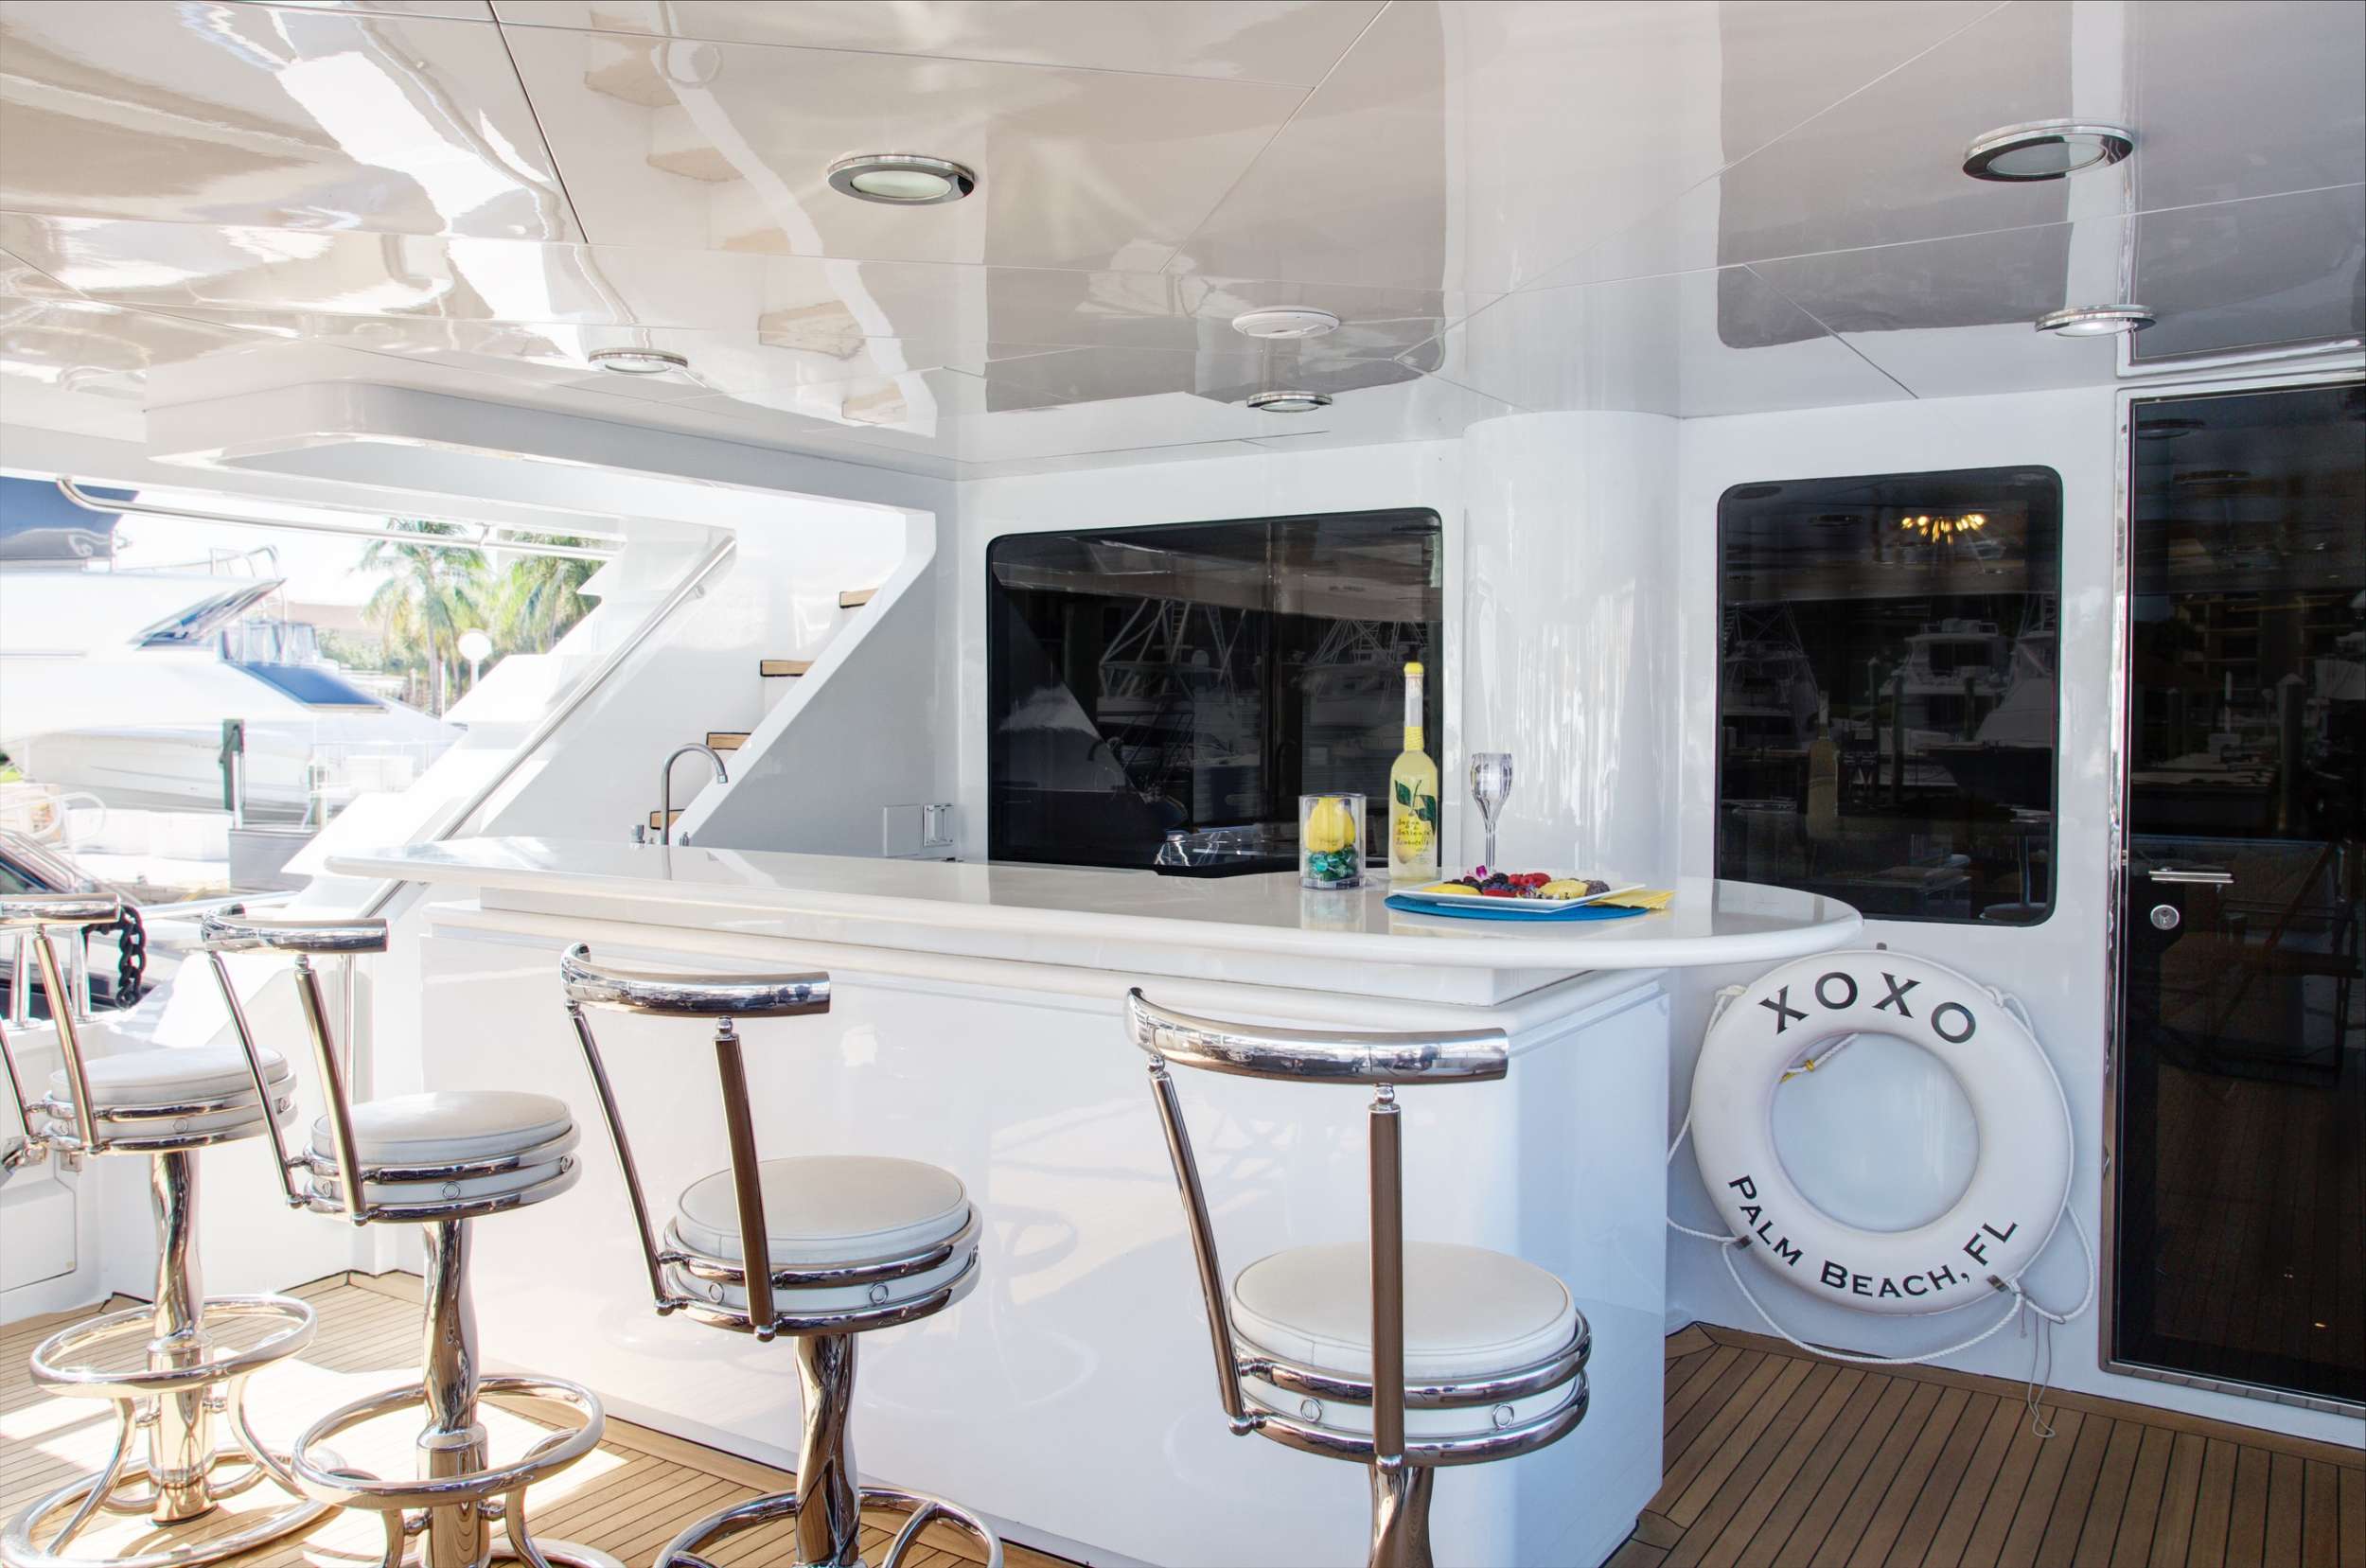 XOXO (118') Yacht Charter - Main Deck Bar